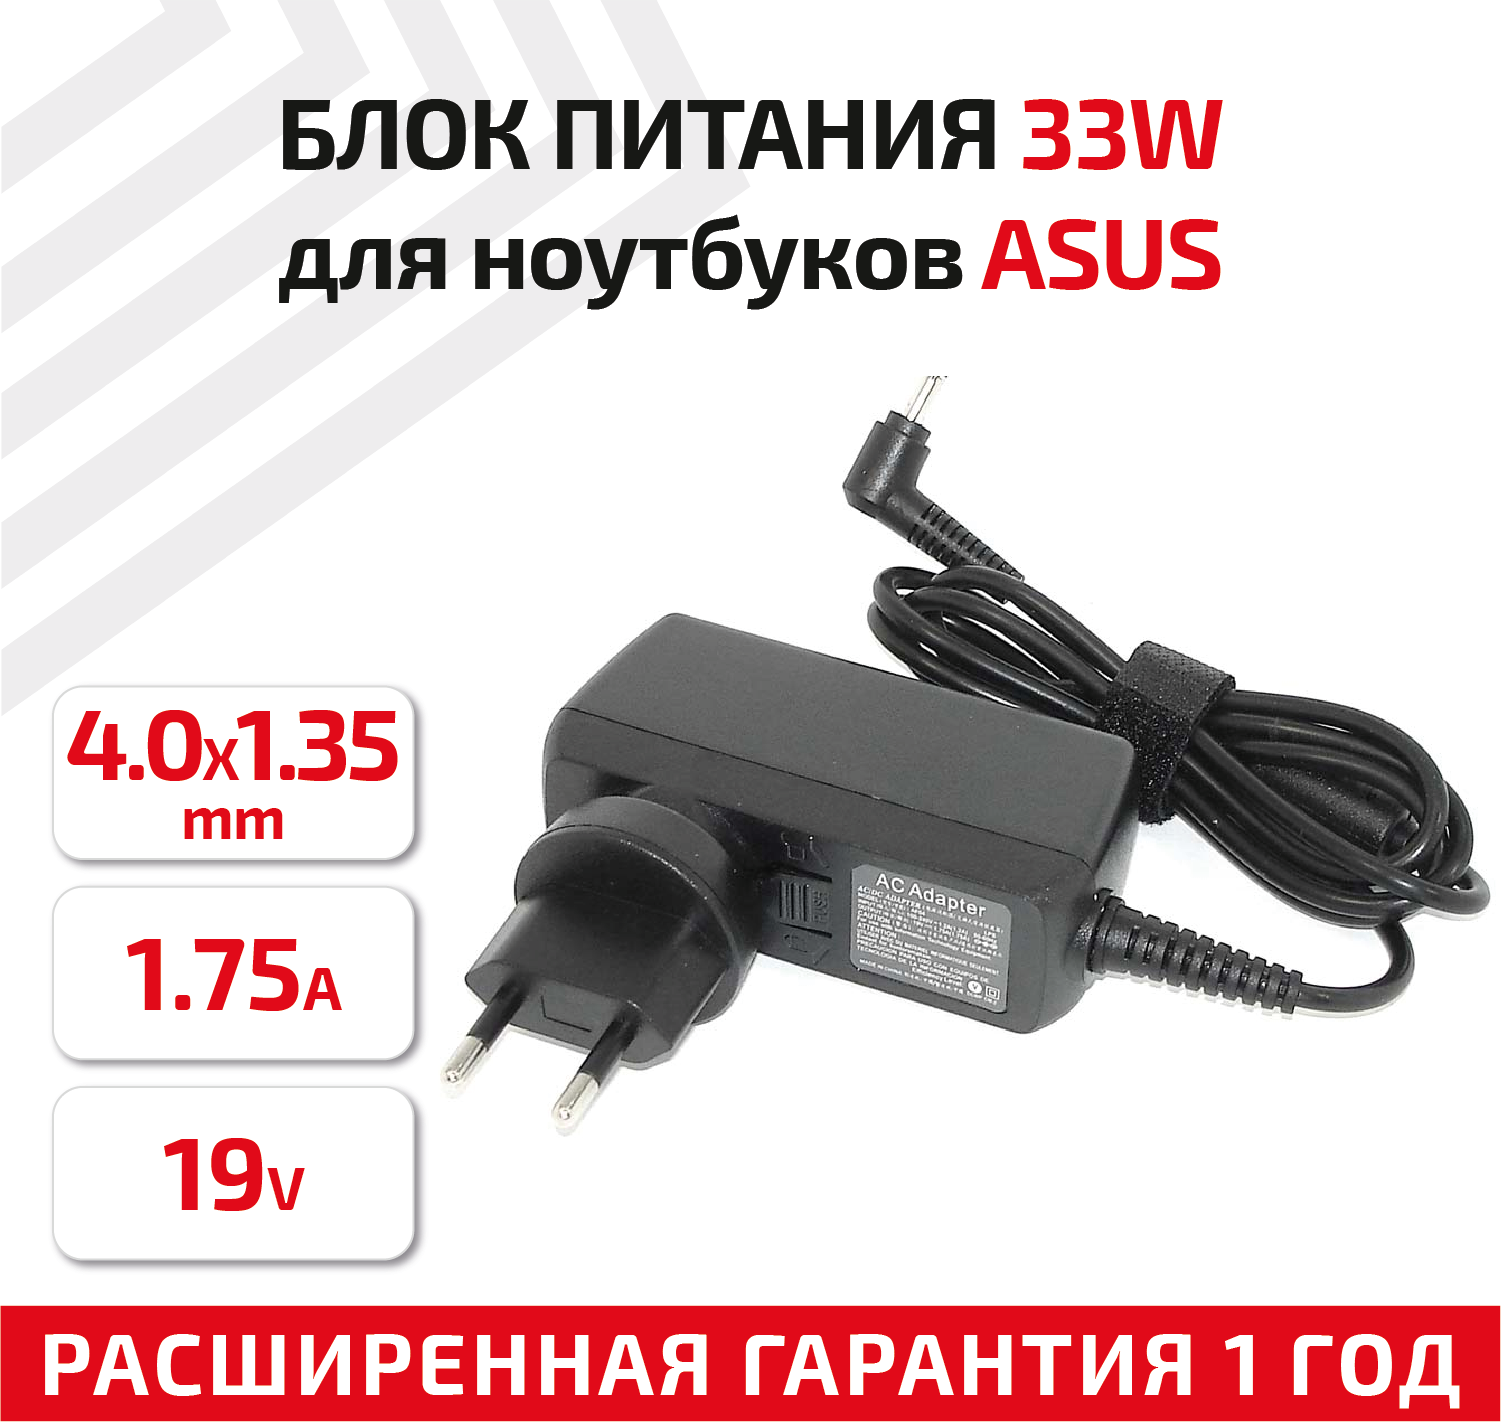 Зарядное устройство (блок питания/зарядка) для ноутбука Asus 19В, 1.75А, 33Вт, 4.0x1.35мм, Travel Charger